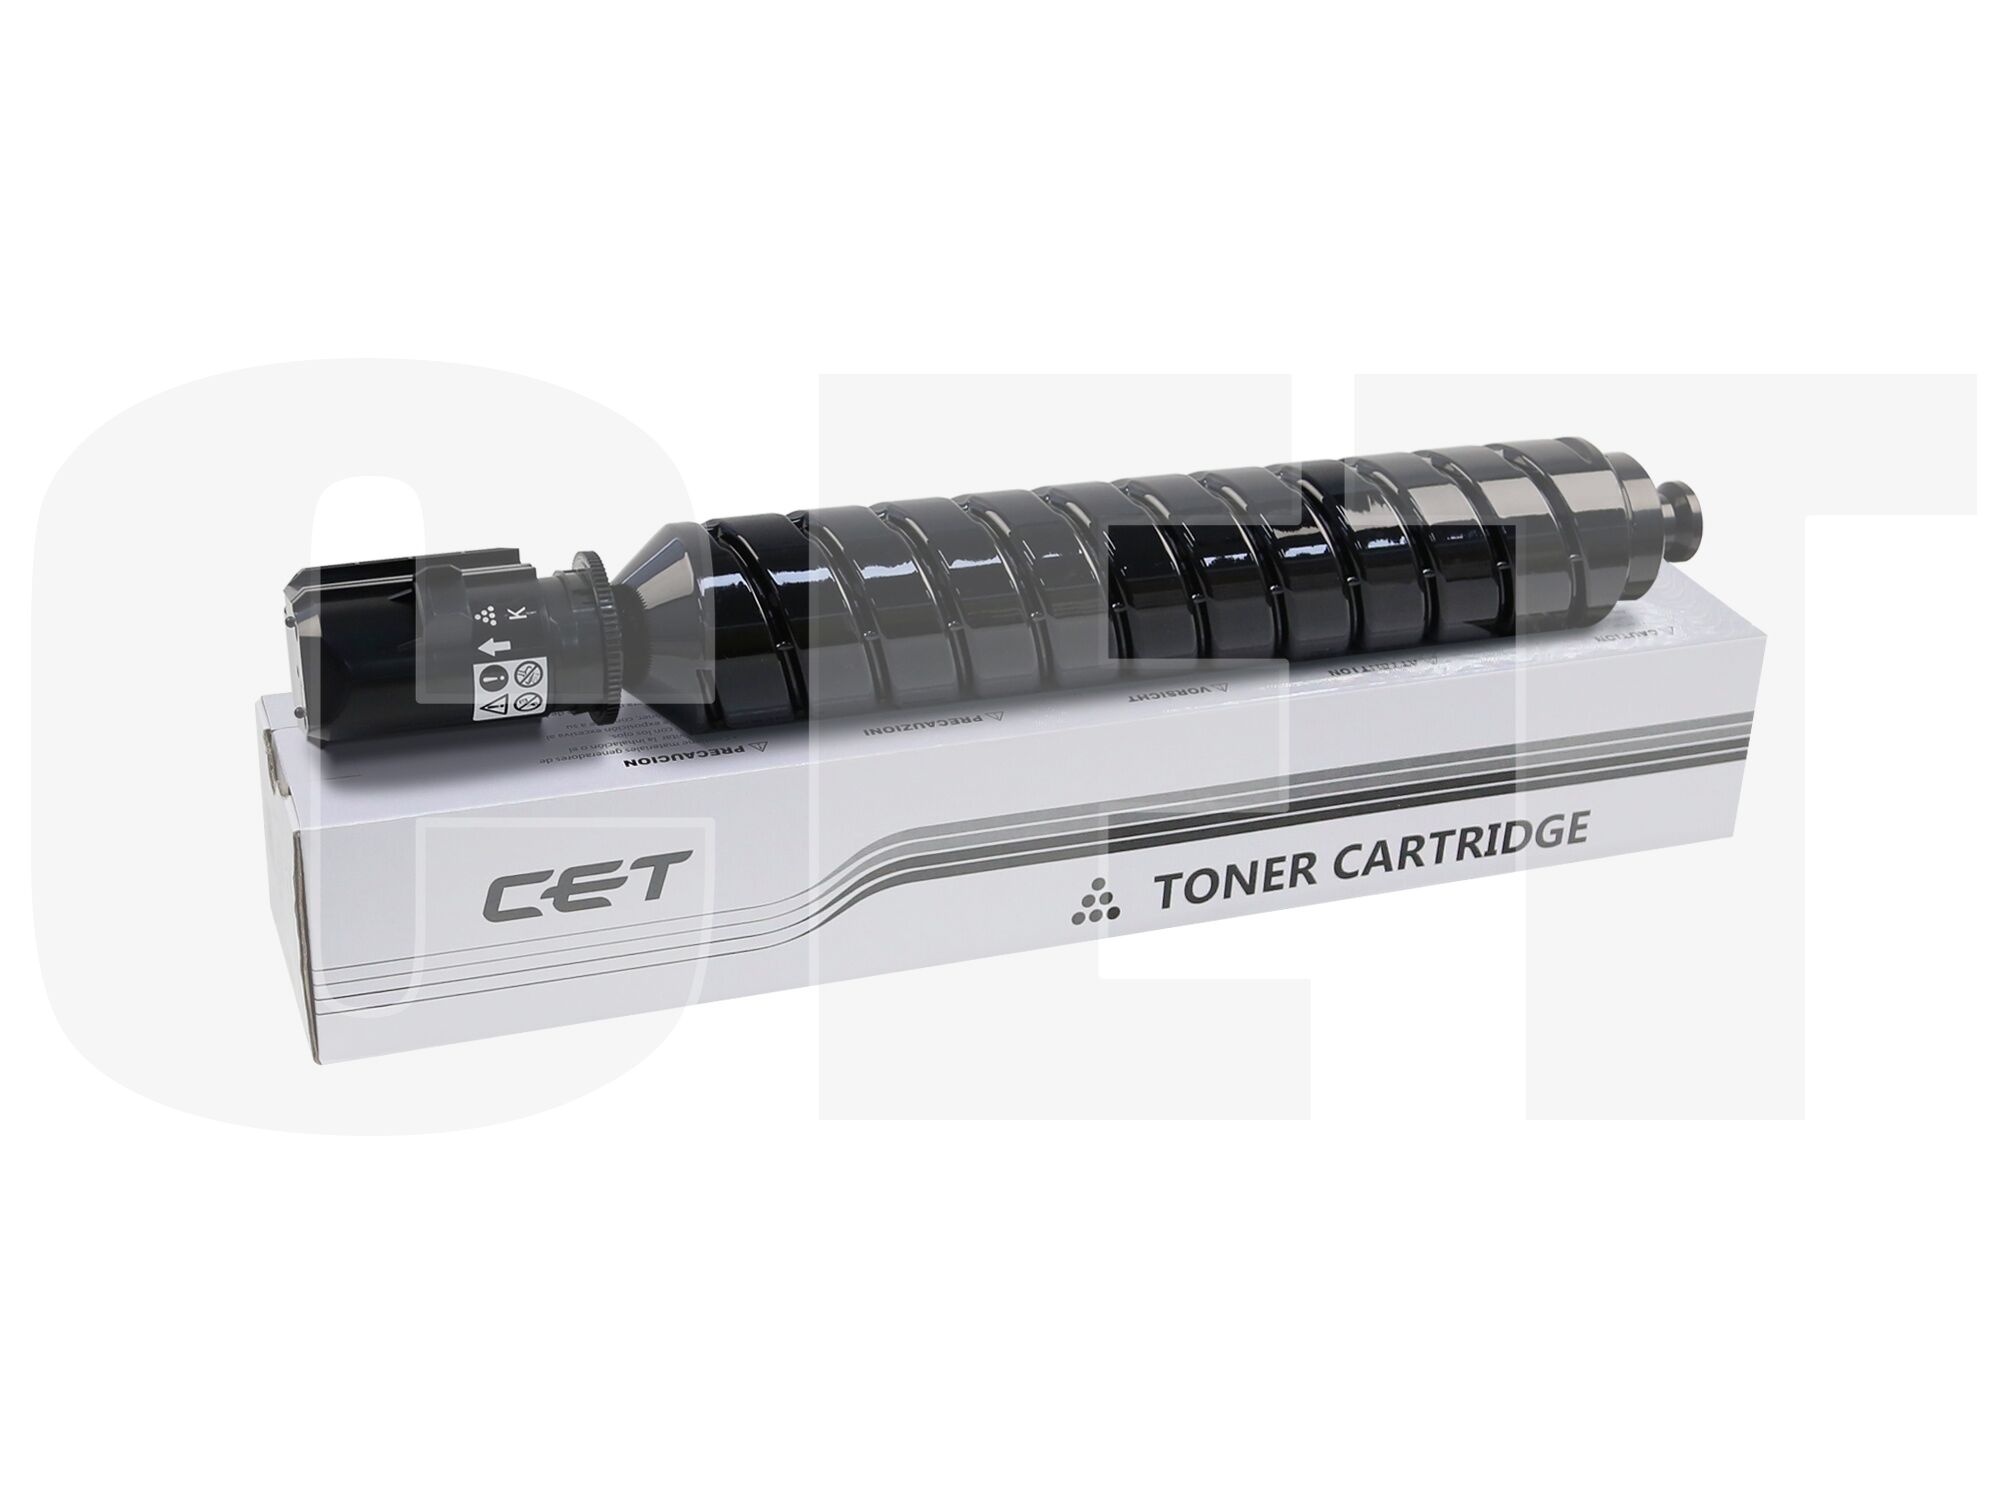 Тонер-картридж-картридж Canon iR C3025/C3025i (т.15,5К) черн, (CET) (C-EXV54) CET141514